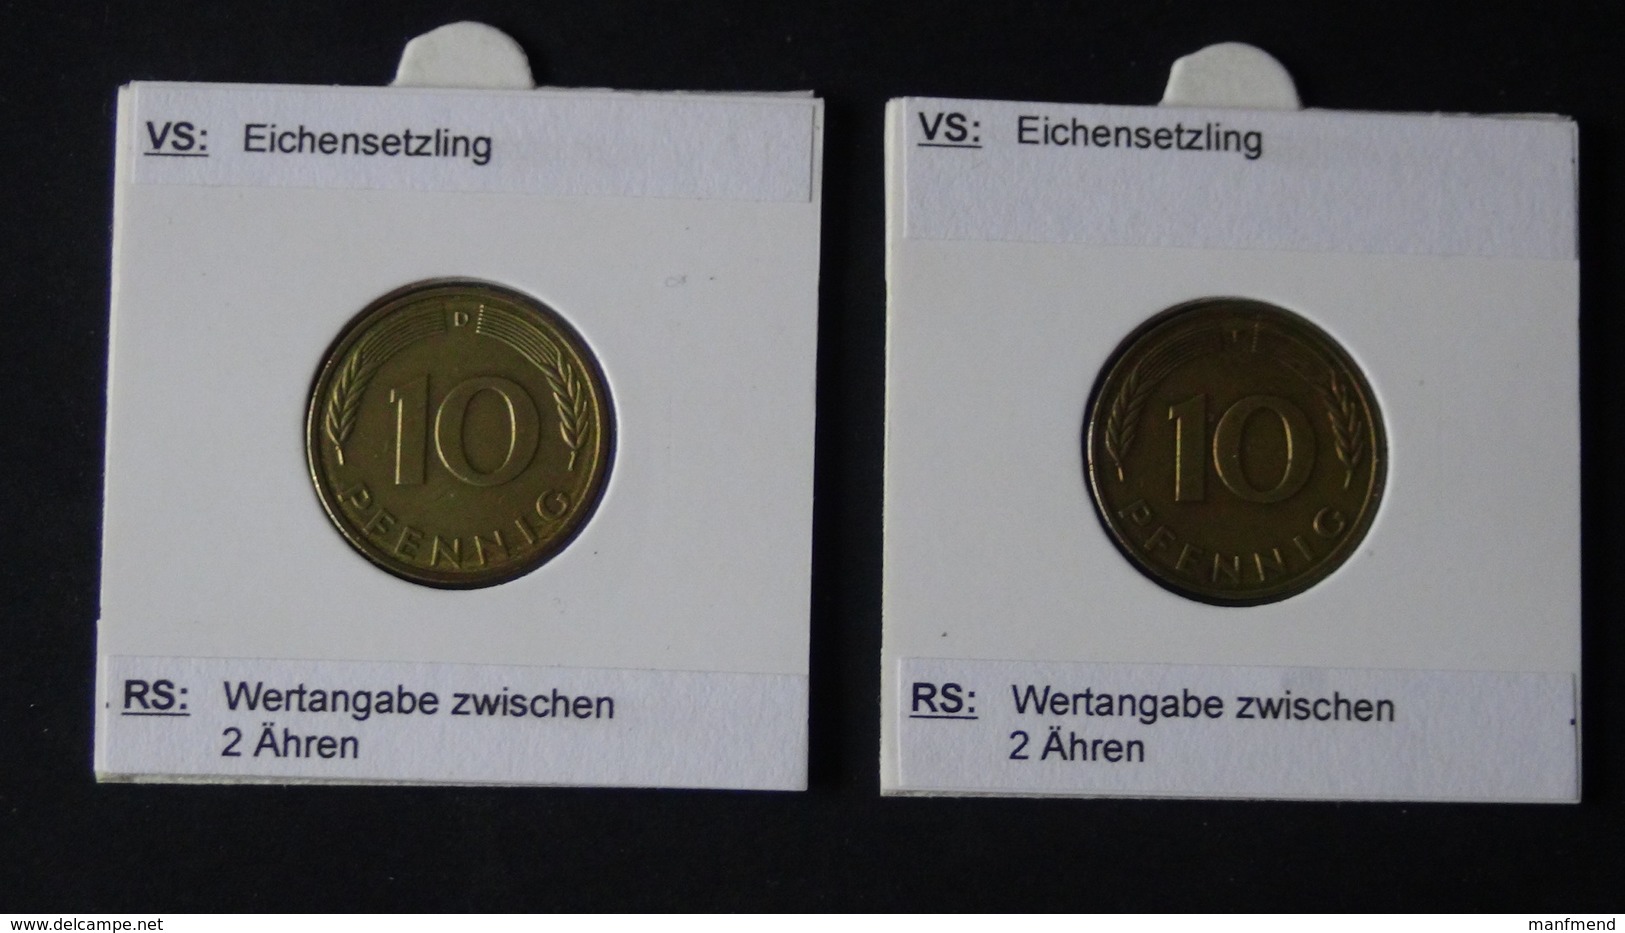 Germany - 1986 - KM 108 - 2x10 Pfennig - Mintmark "D"+"F" - VF - Look Scans - 10 Pfennig